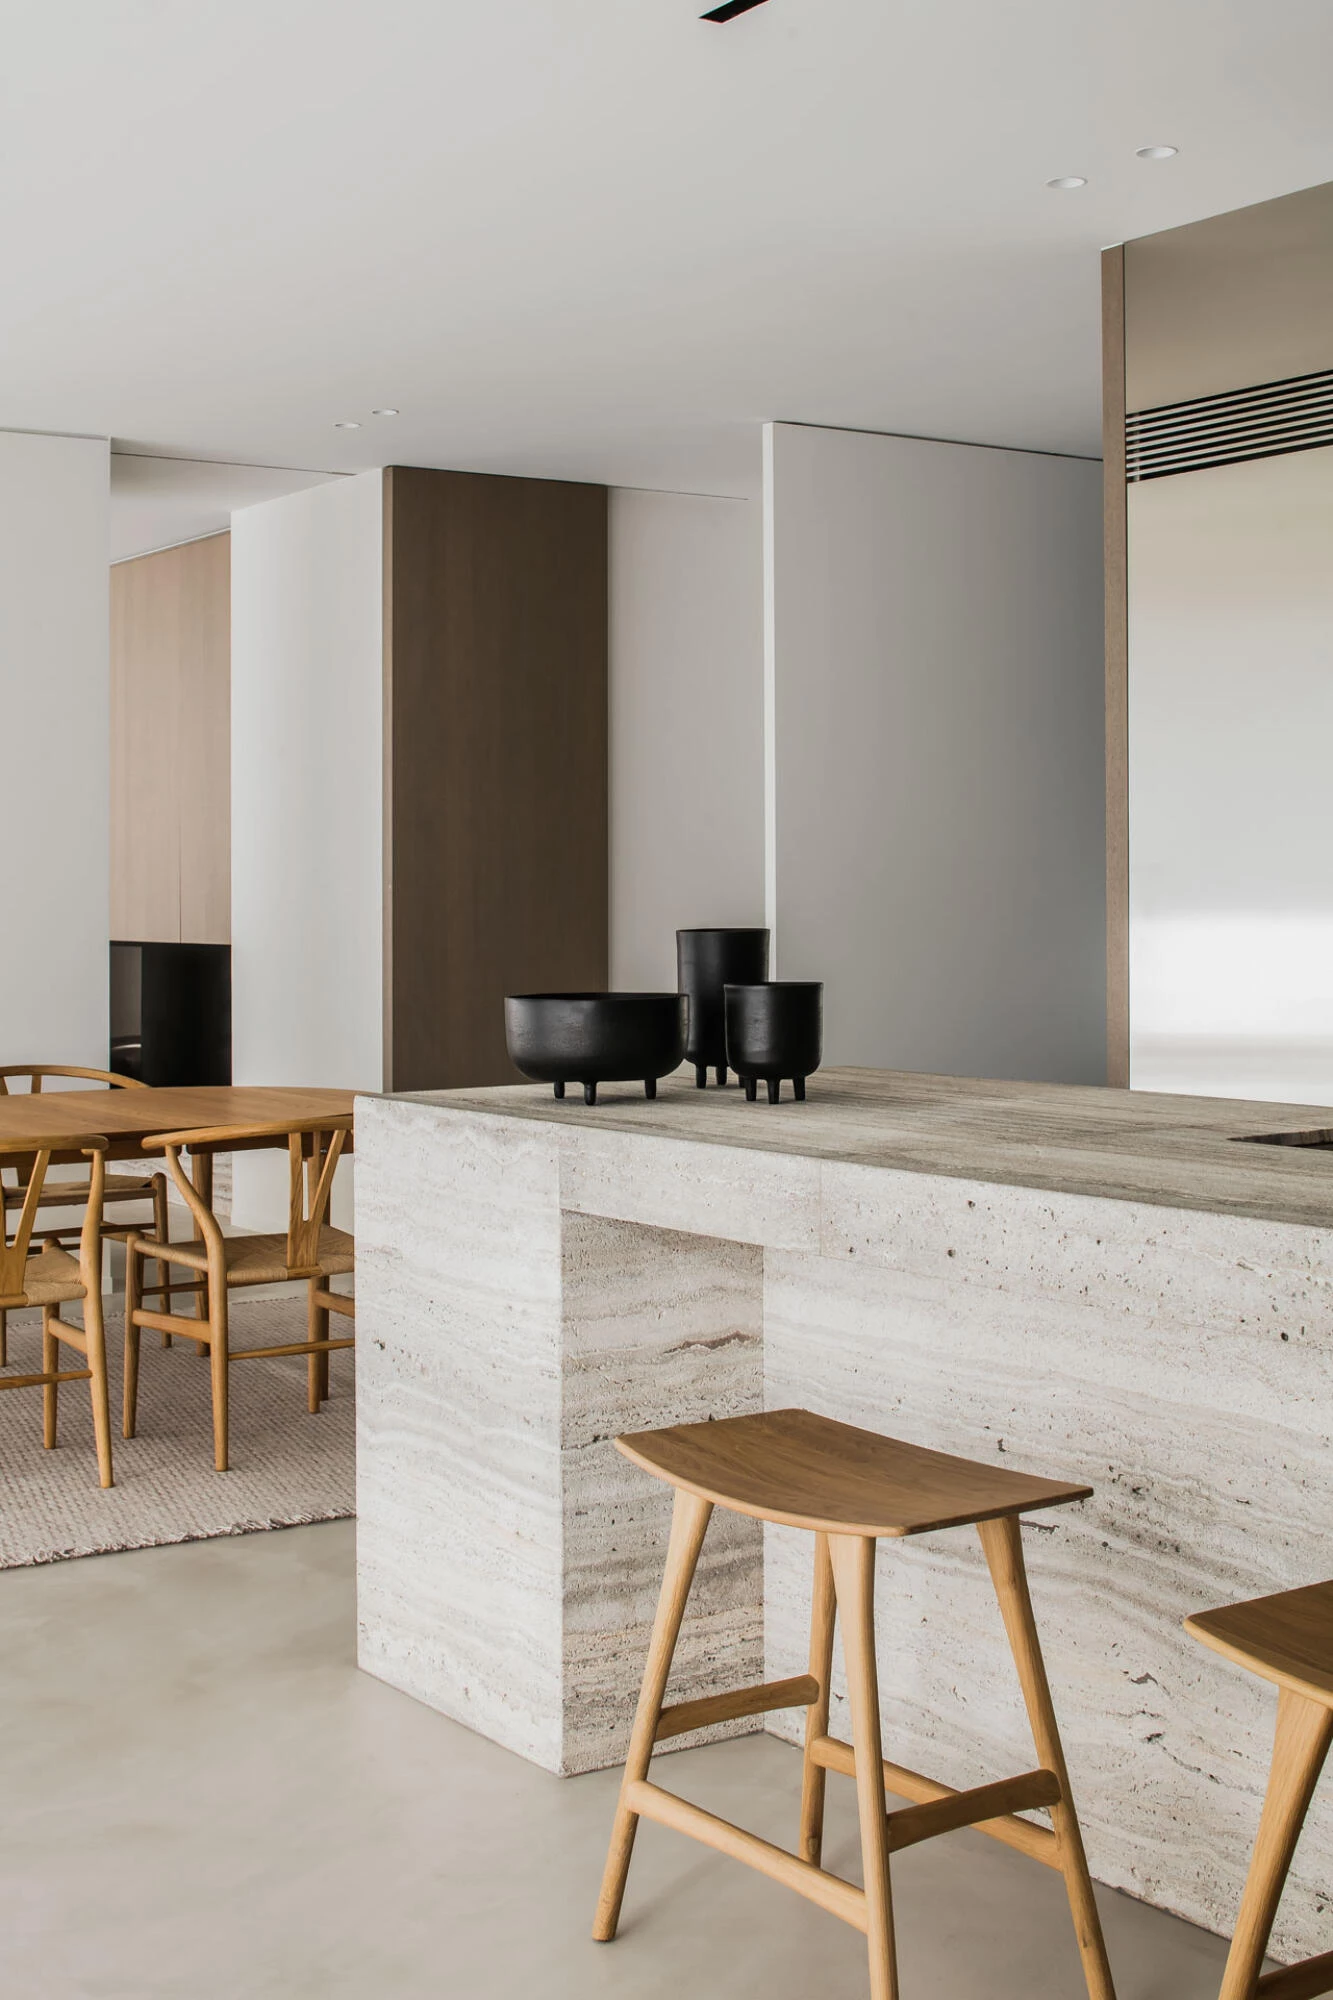 Sol en stuc Thalostuc dans une cuisine minimaliste dans l'intérieur de Pieter Vanrenterghem